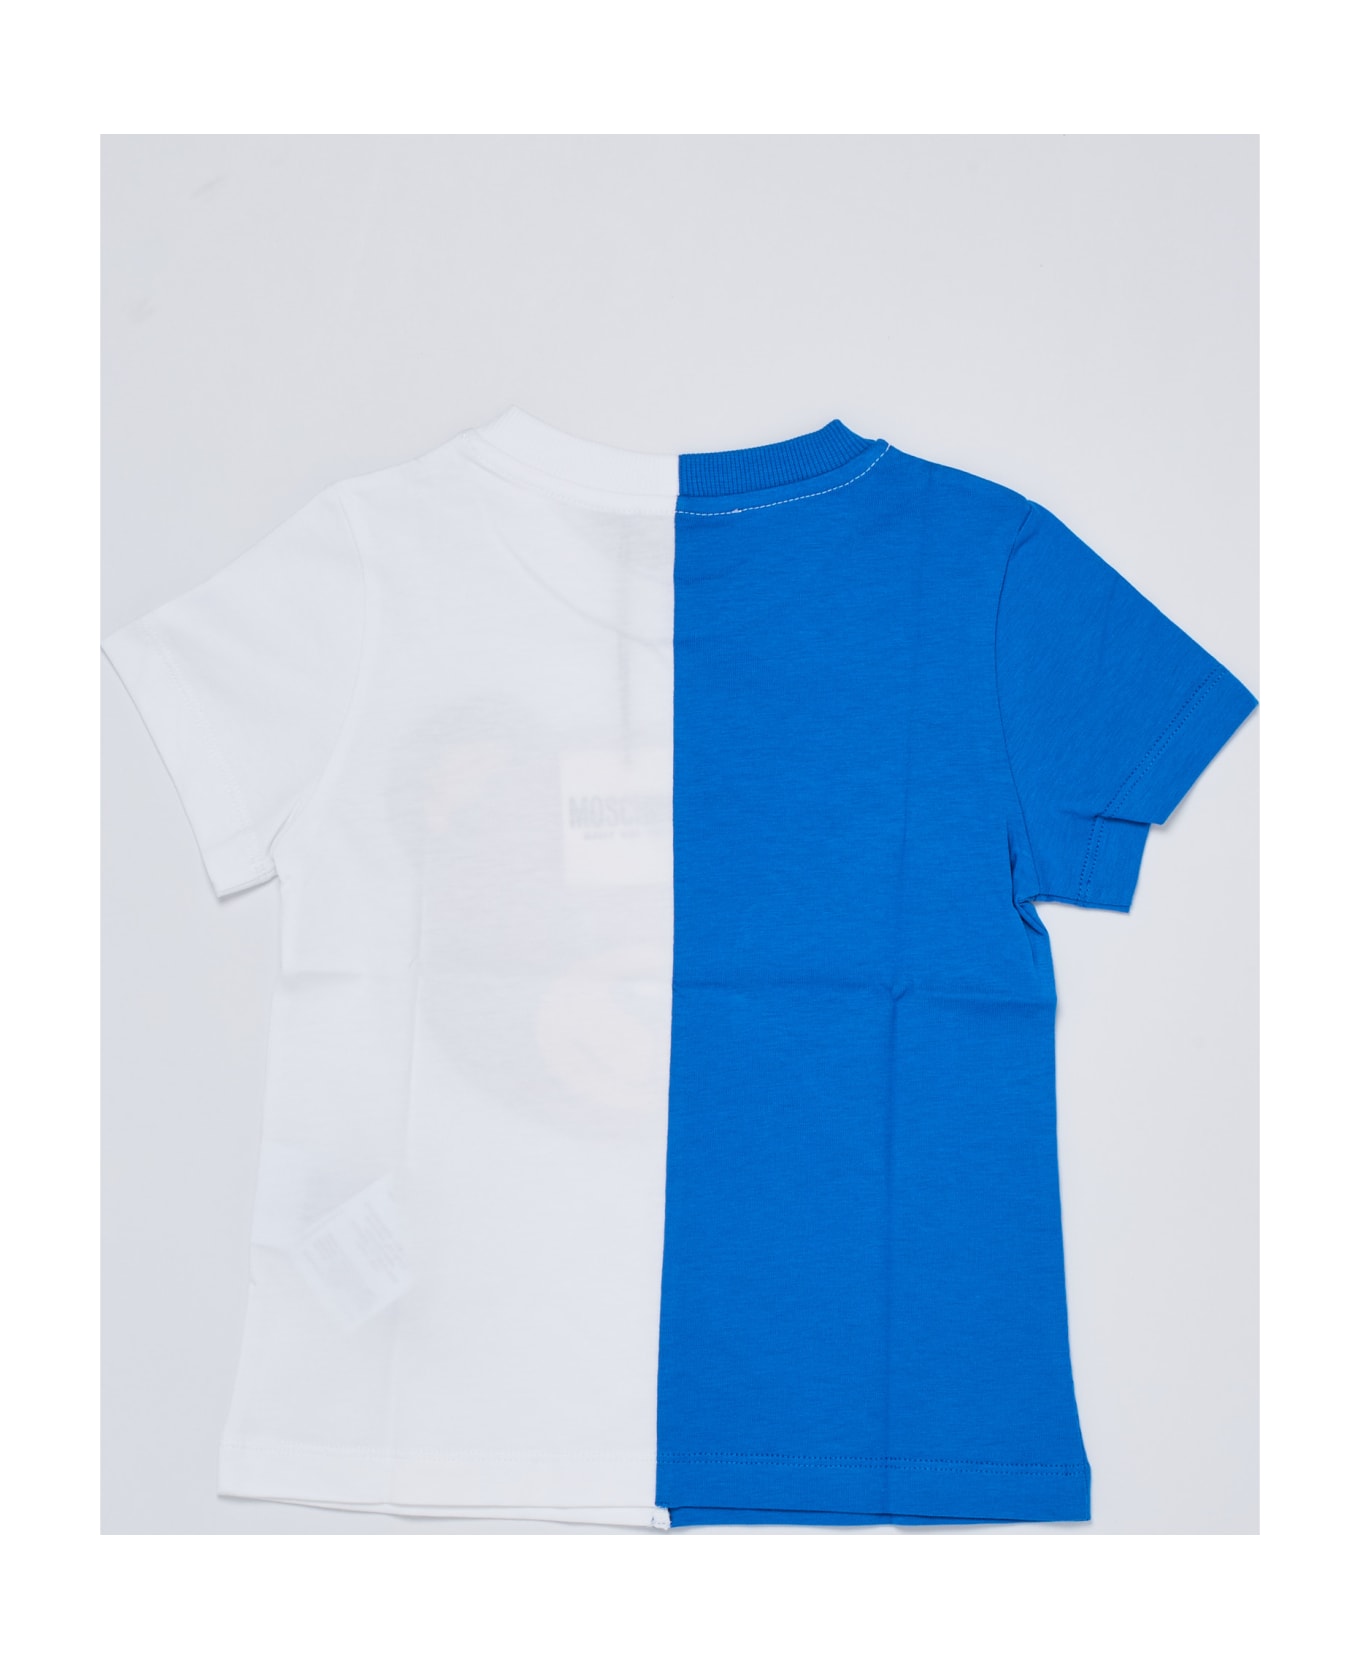 Moschino T-shirt T-shirt - B.CO-AZZURRO Tシャツ＆ポロシャツ